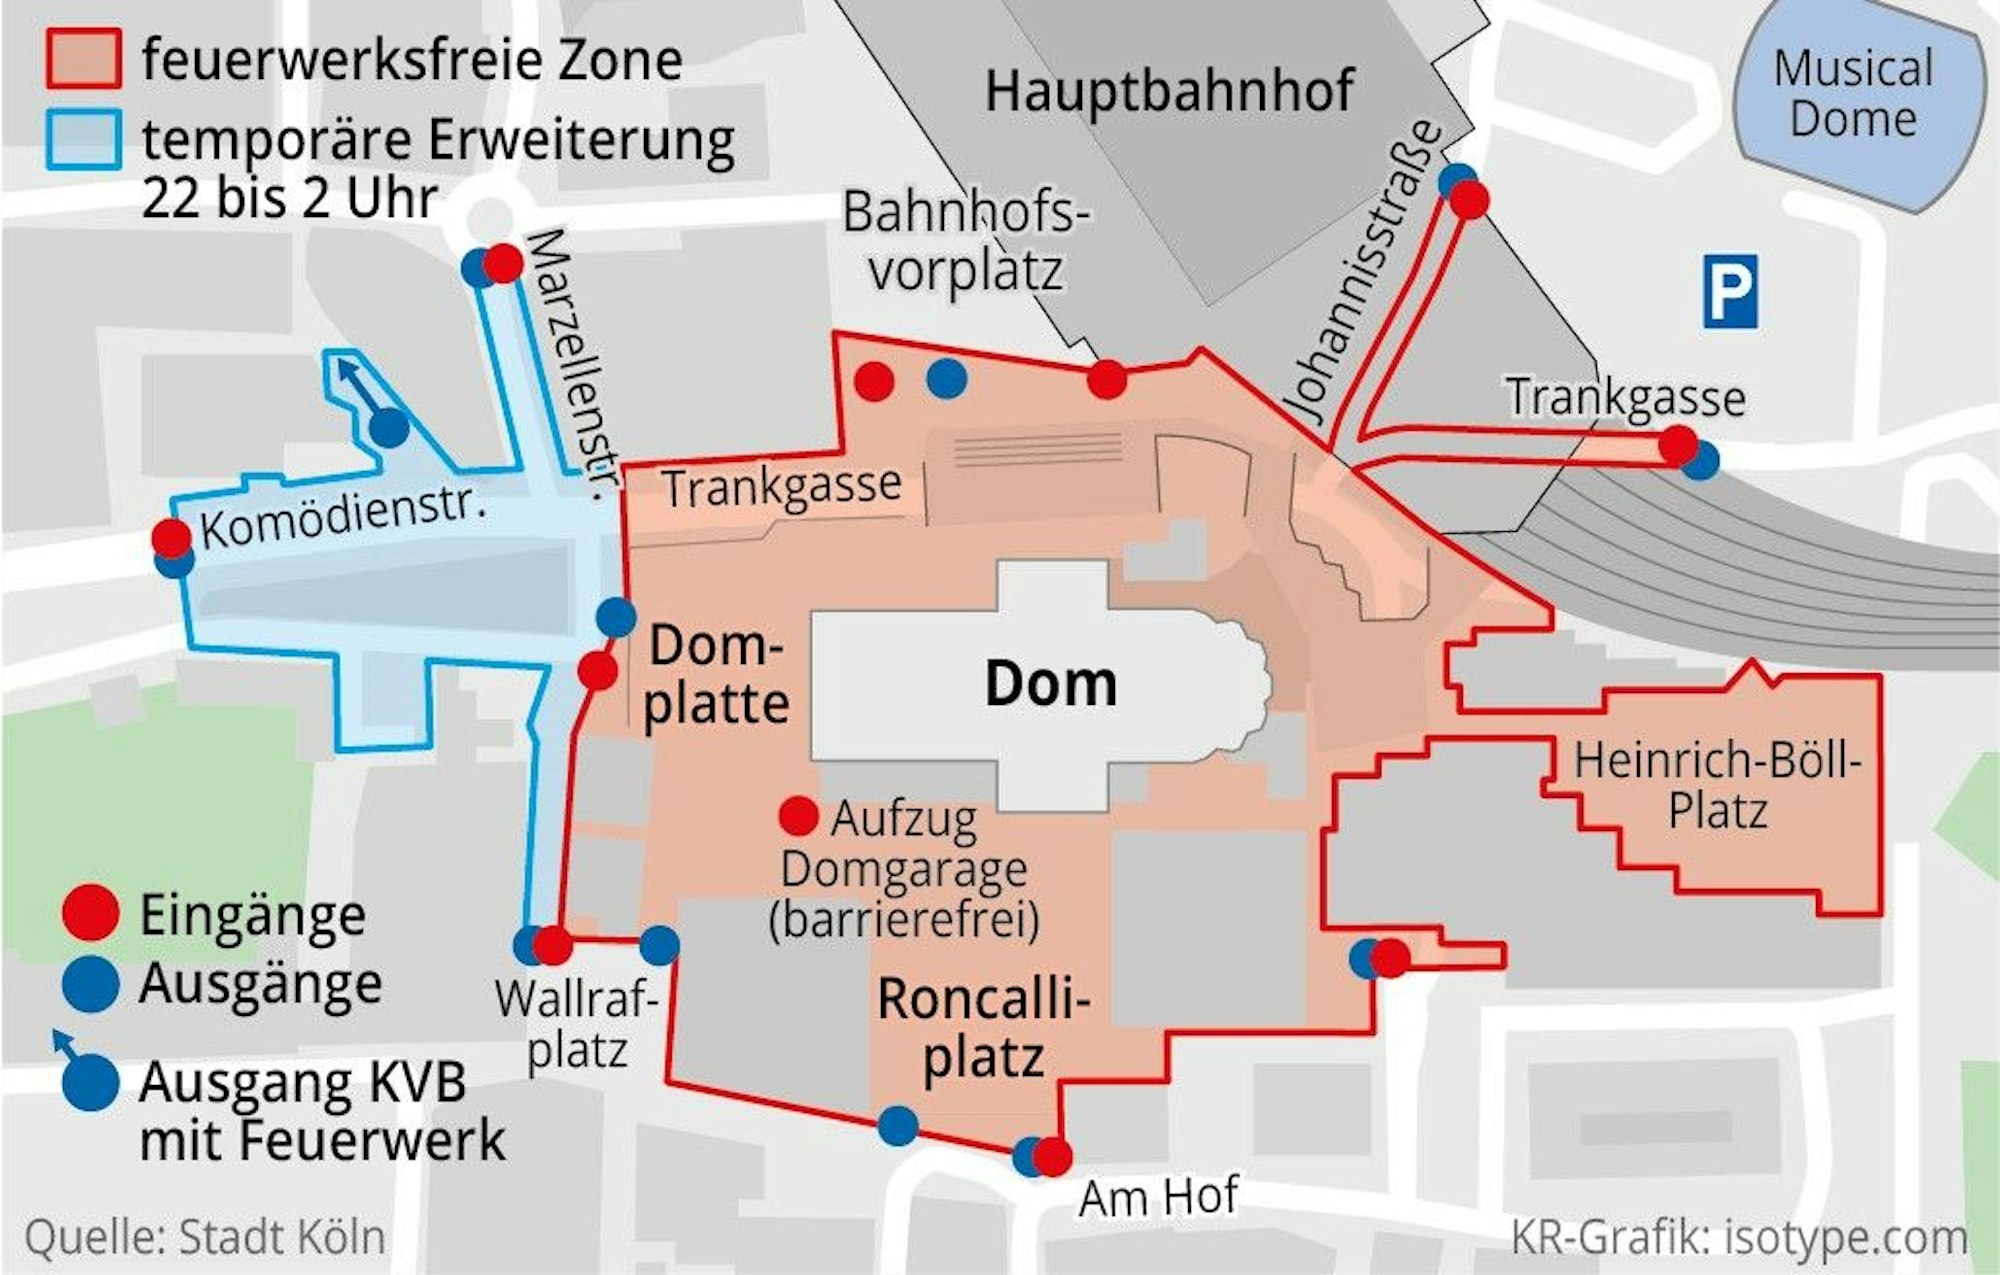 Eine Karte der feuerwerksfreien Zone im Bereich um den Dom.